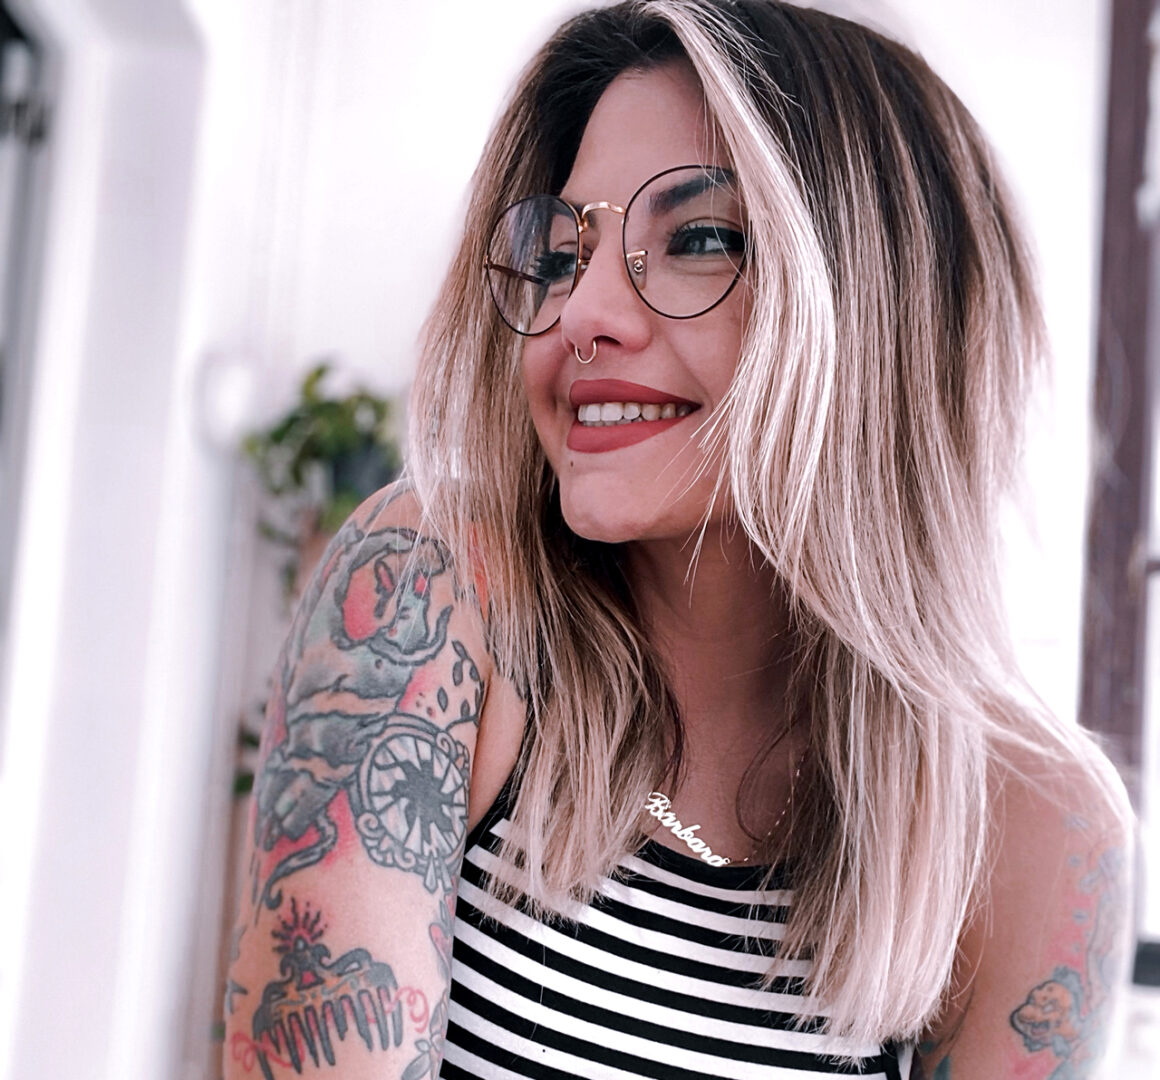 Barbara Tattooer, tattoo artist, @barbara.tattooer